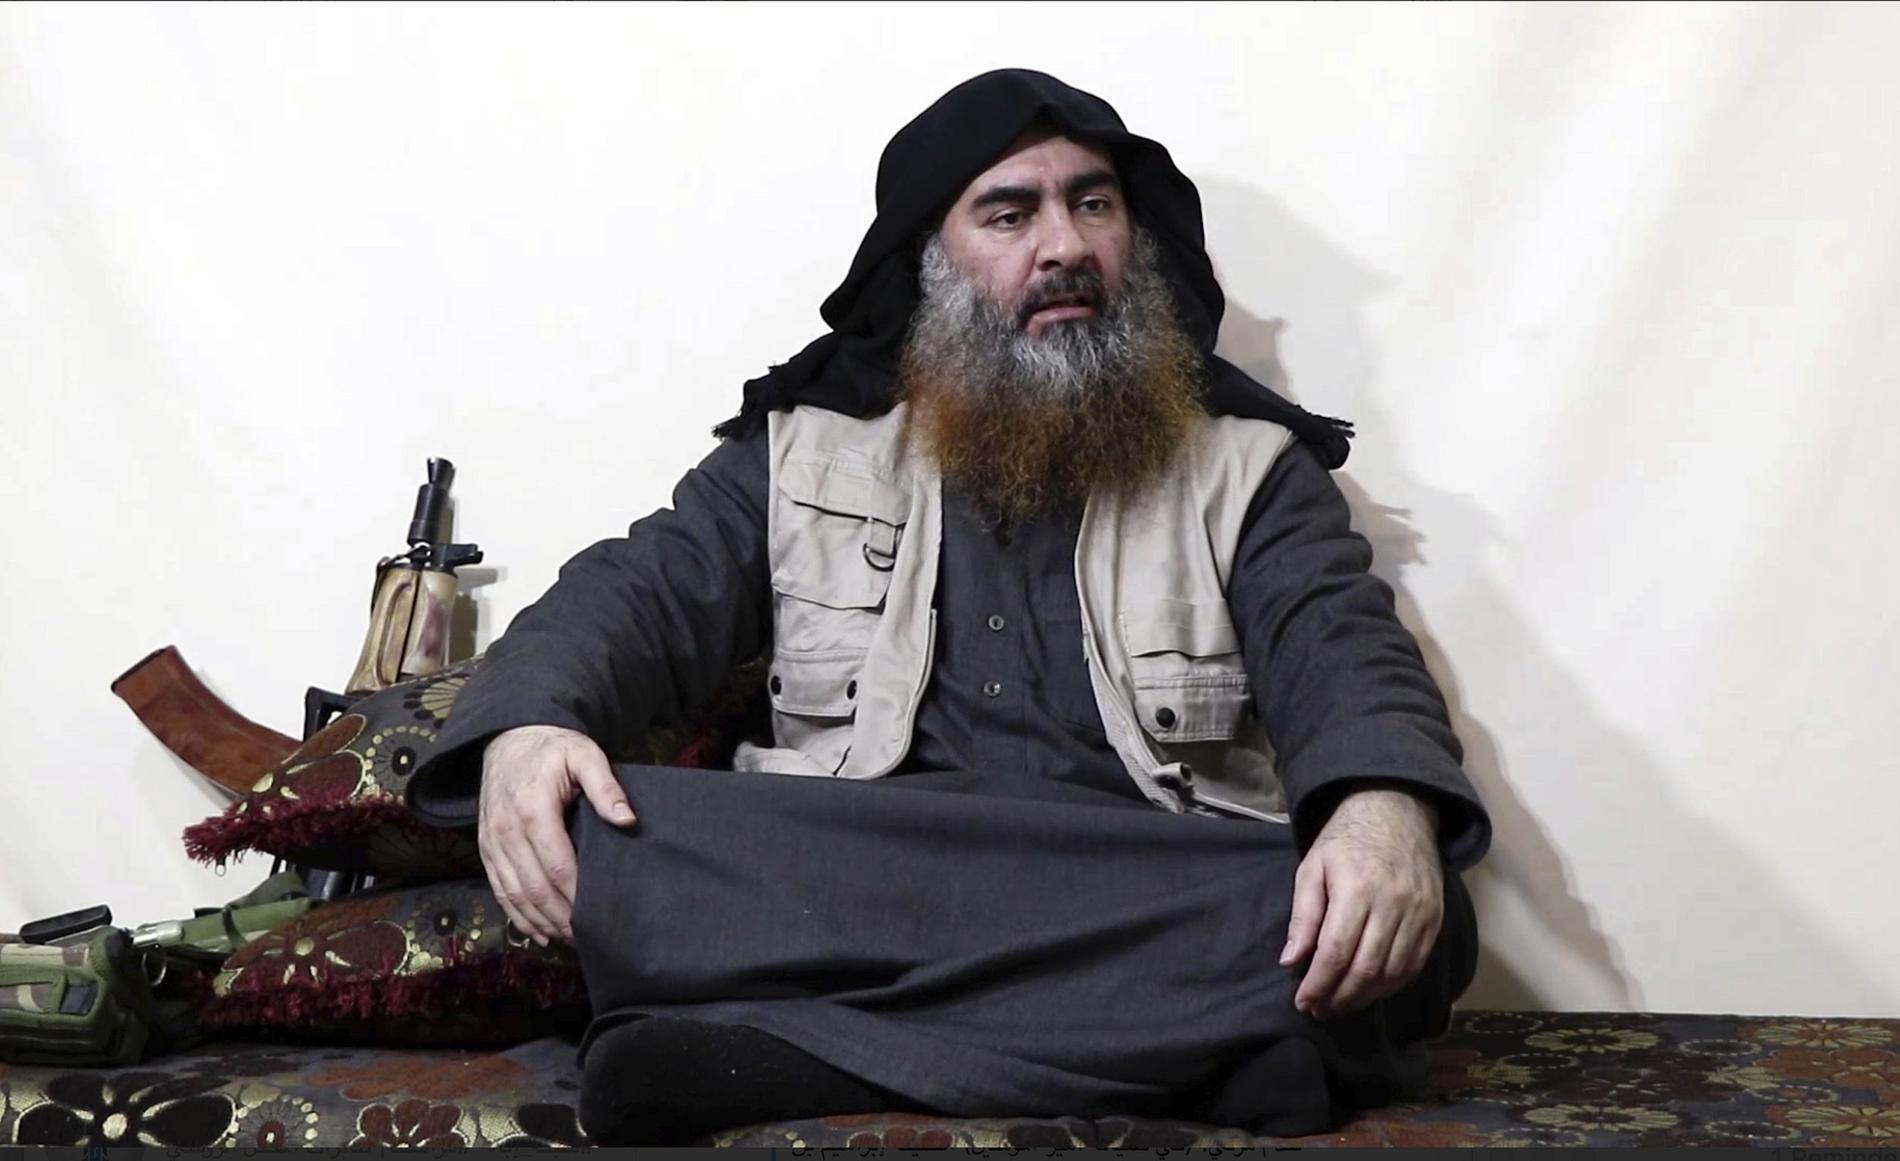 Den sista kända bilden på IS-ledaren Abu Bakr al-Baghdadi.